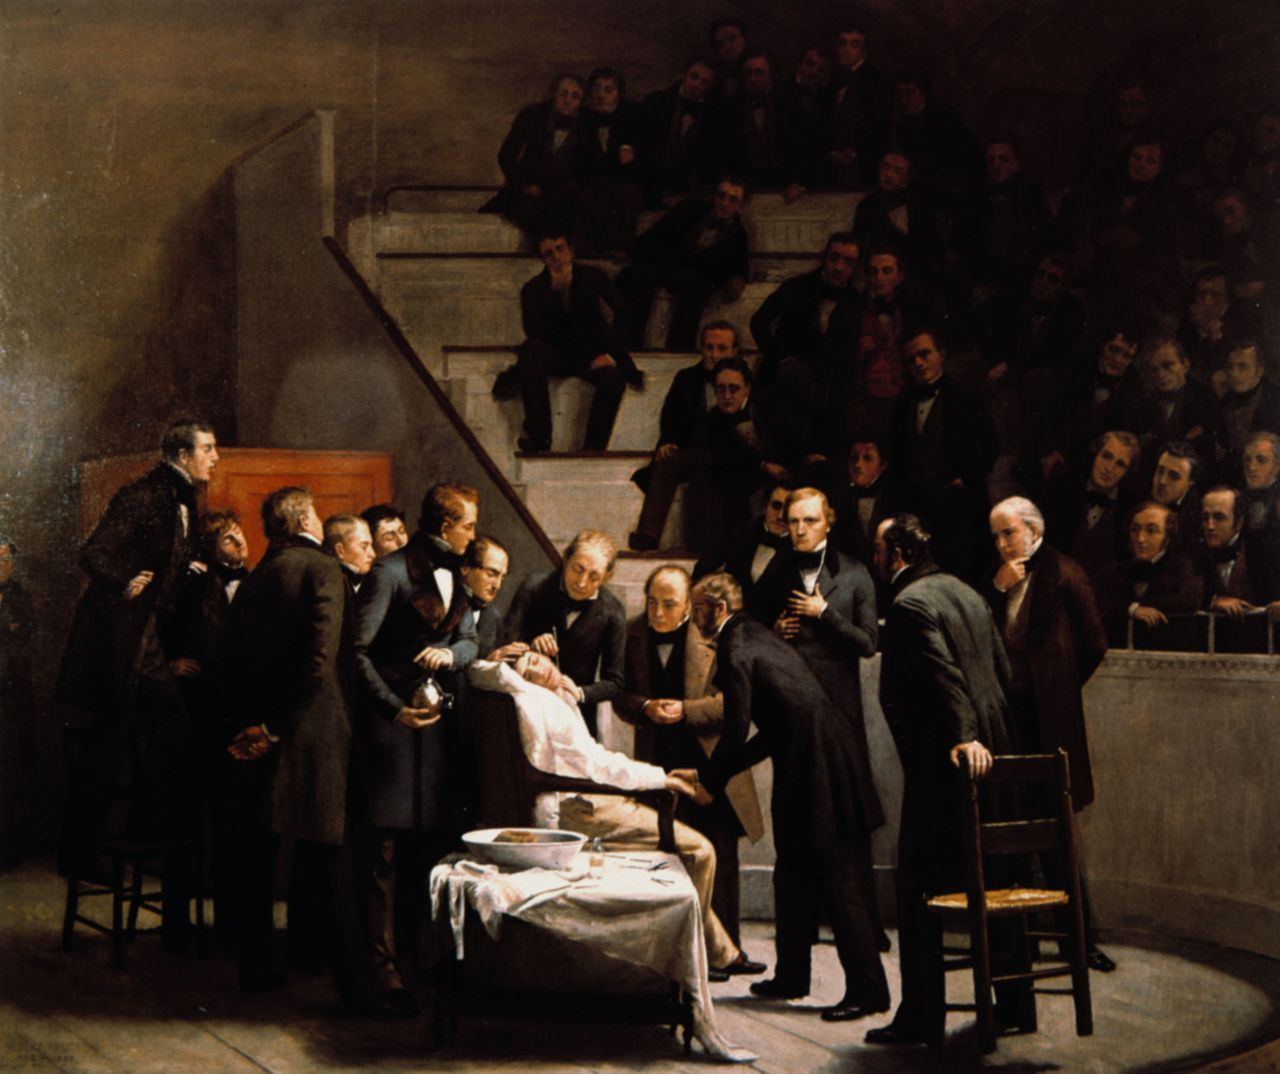 Jeder der schon mal auf dem OP-Tisch lag und während der Operation sanft schlummerte, kann sich bei ihm bedanken: Zahnarzt William Morton. Er führte 1846 die erste Operation mit Vollnarkose durch.